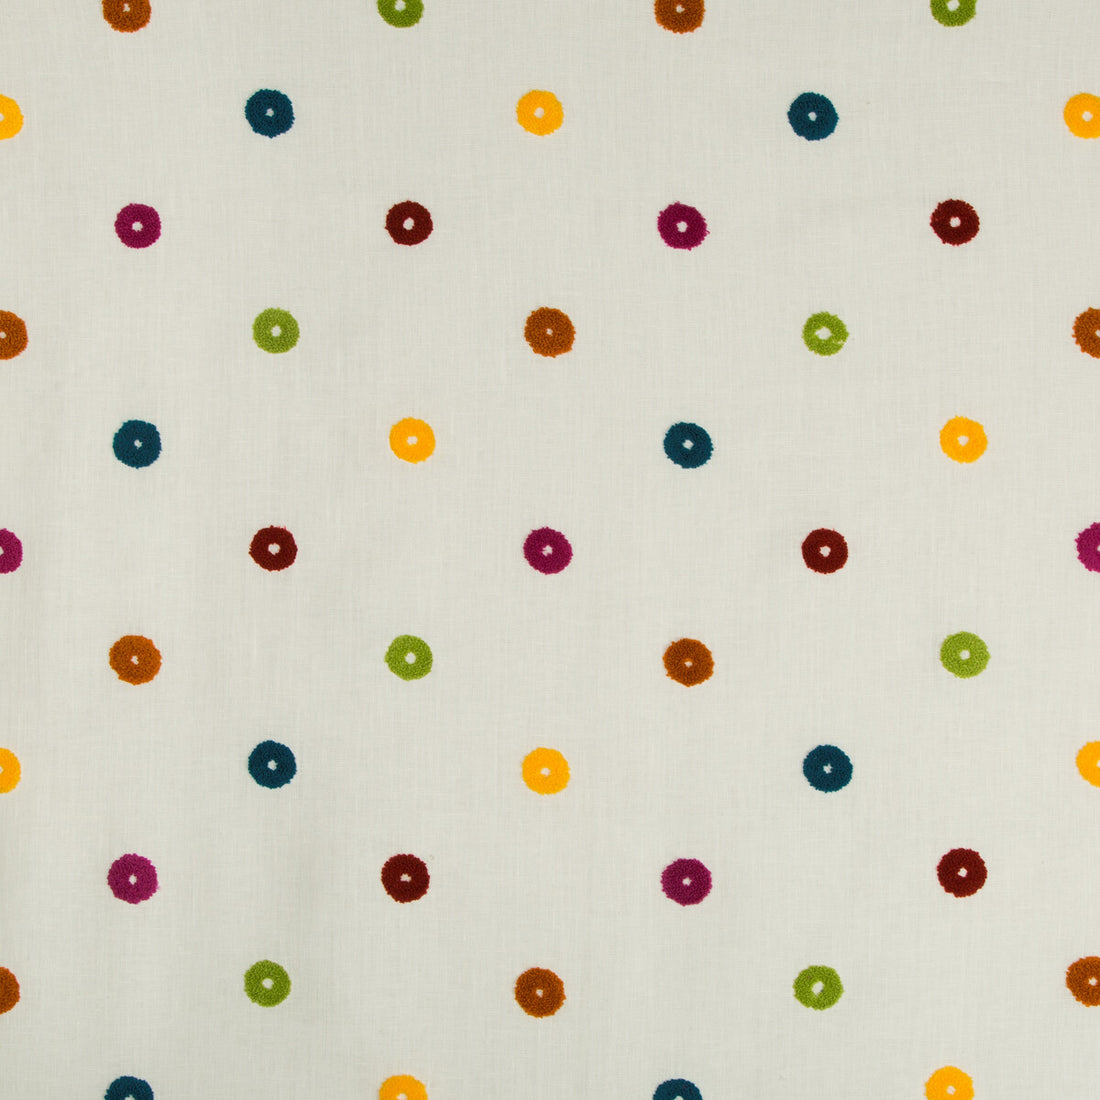 Kravet Basics fabric in 35458-319 color - pattern 35458.319.0 - by Kravet Basics